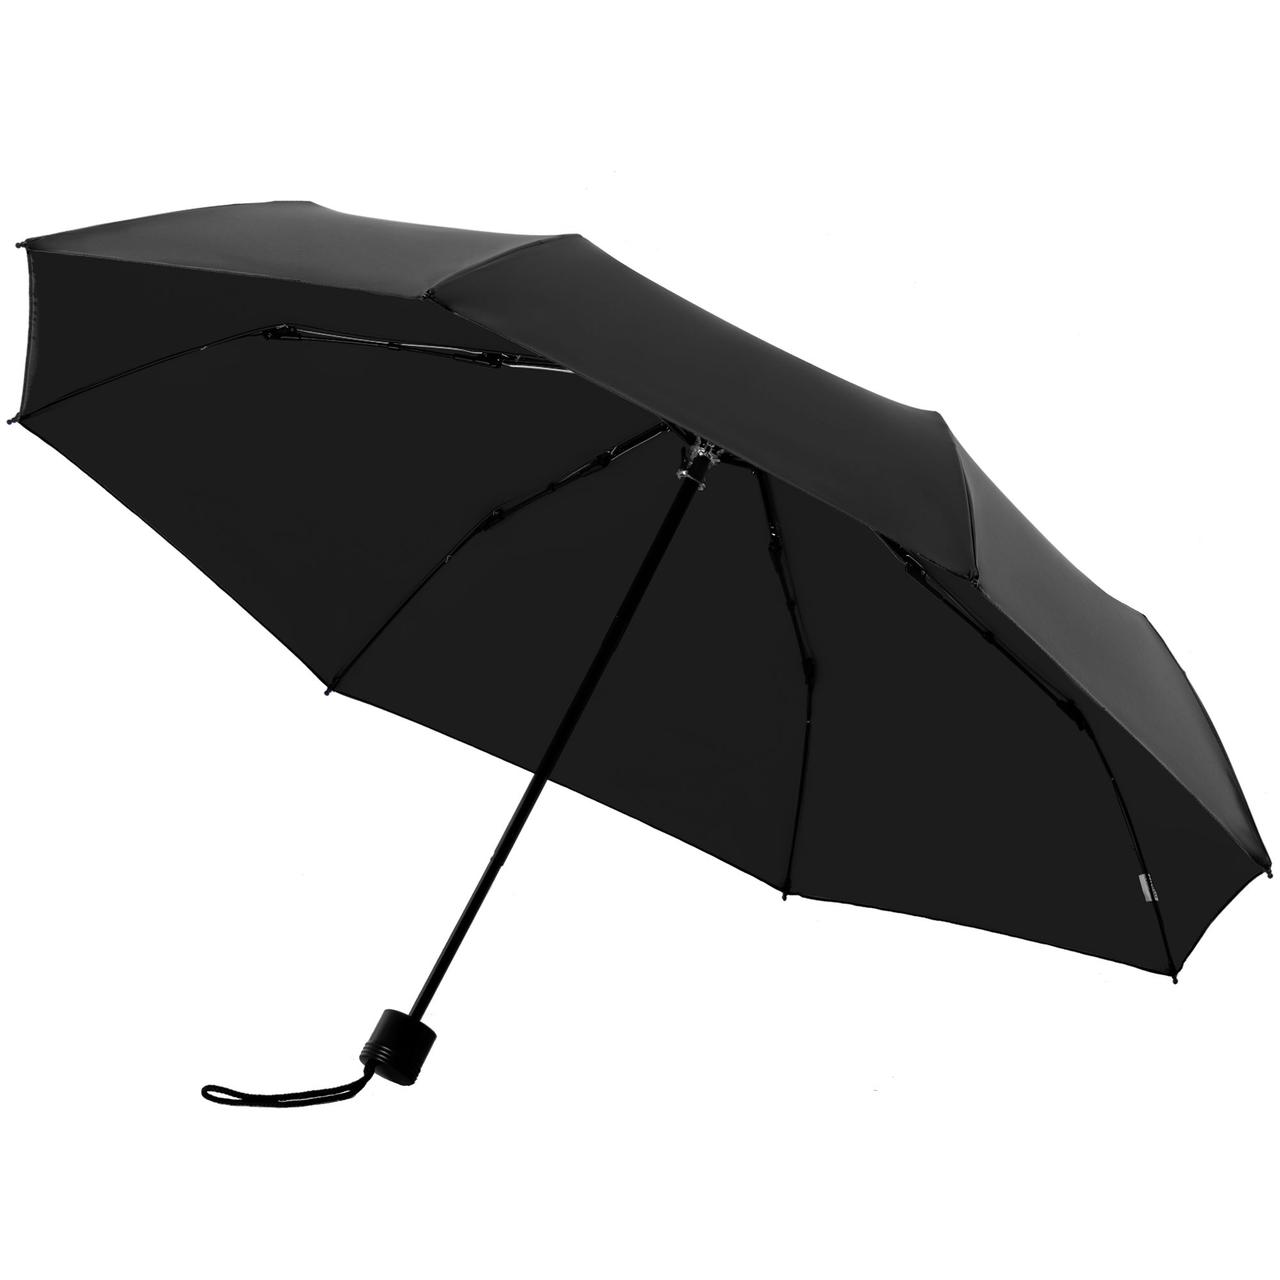 Зонт складной с защитой от УФ-лучей Sunbrella, черный (артикул 10993.30)